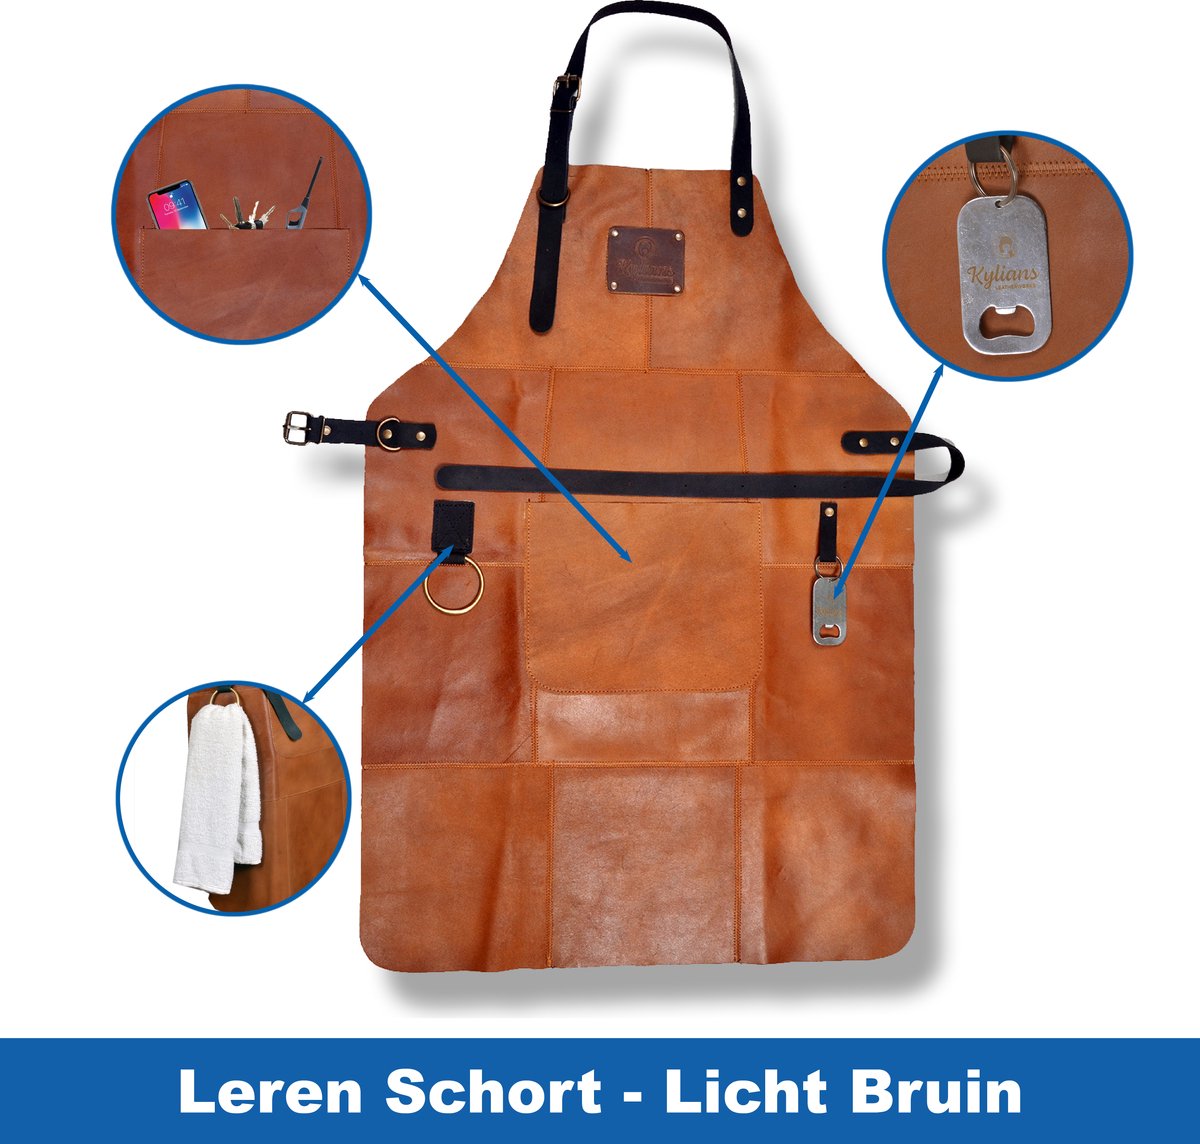 Leren Schort Licht Bruin 81 x 56 cm - Barbecue Schort Man - Cognac Keukenschort